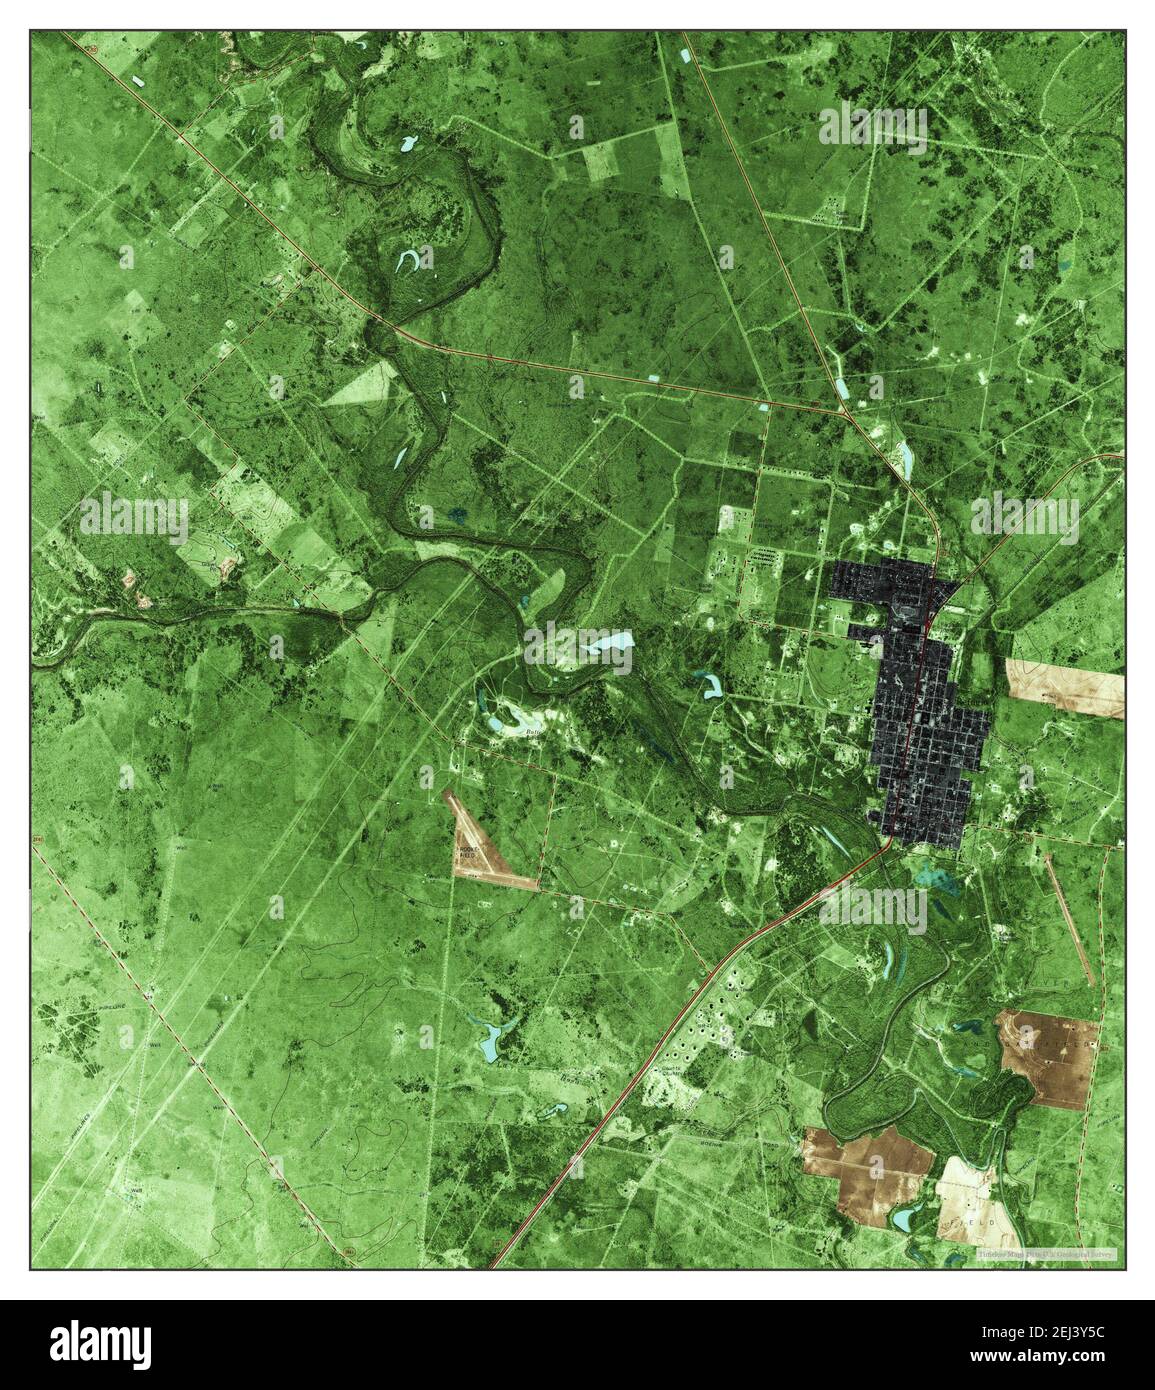 Refugio, Texas, carte 1979, 1:24000, États-Unis d'Amérique par Timeless Maps, données U.S. Geological Survey Banque D'Images